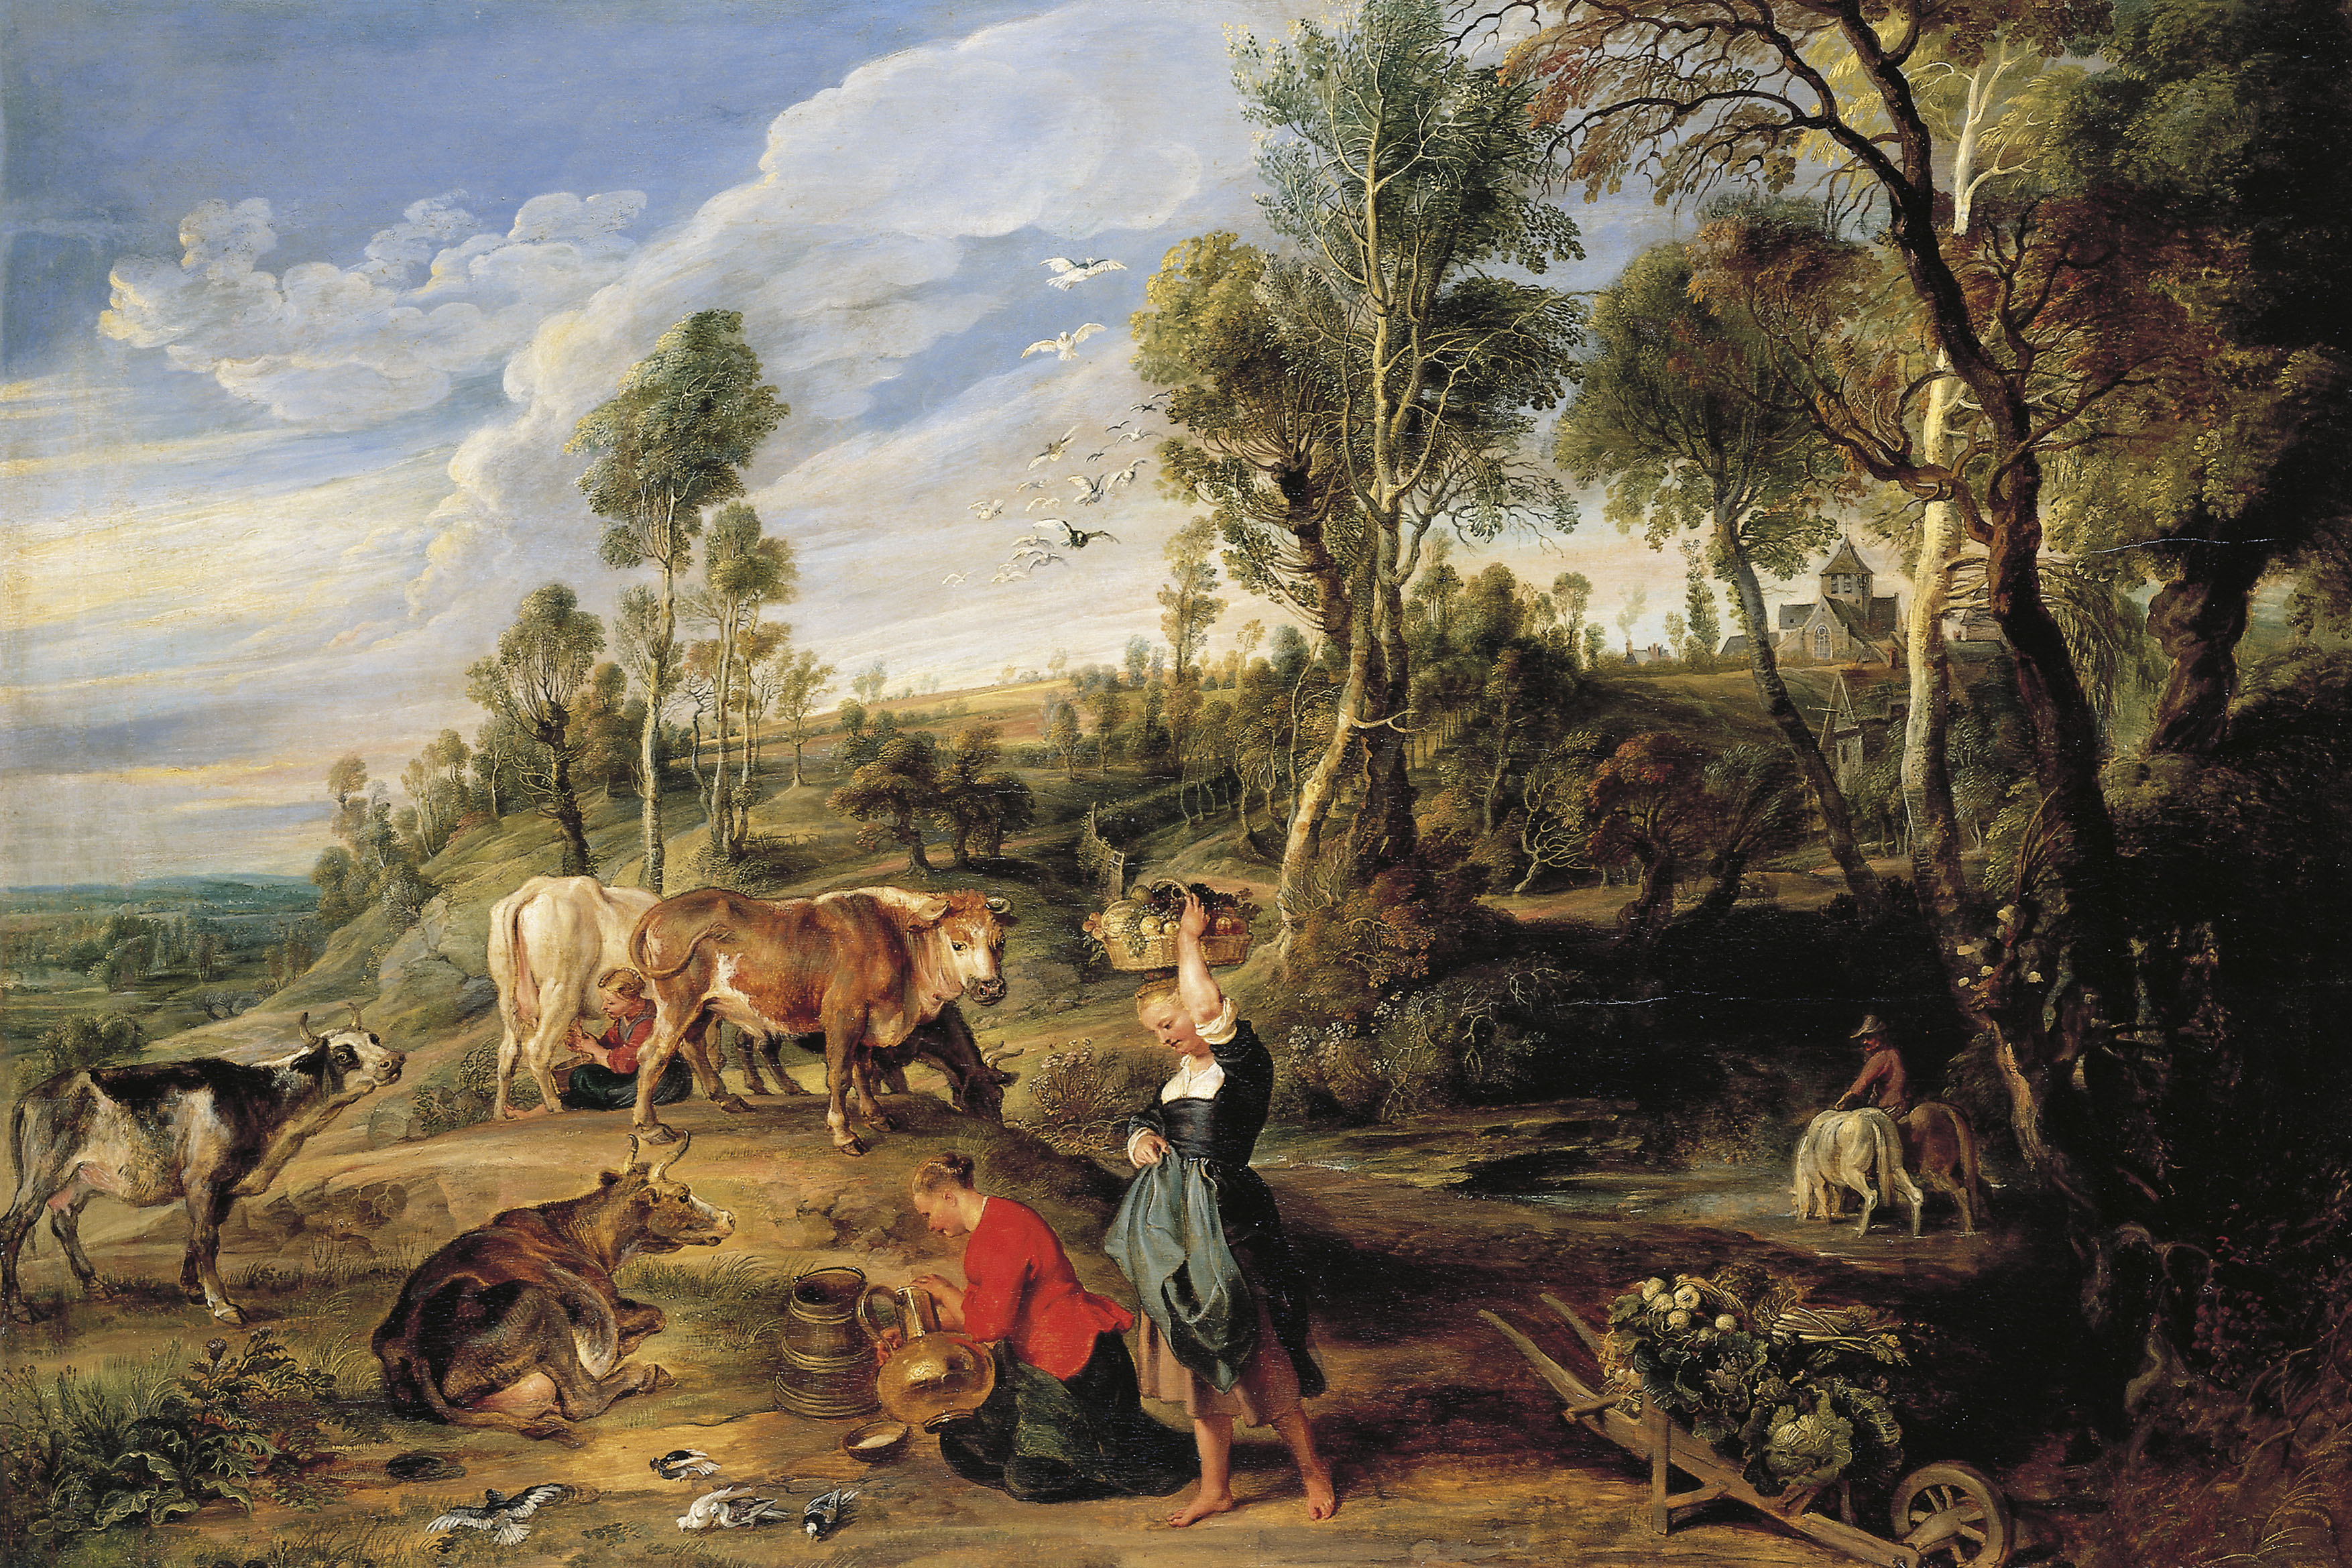 Painting by Sir Peter Paul Rubens